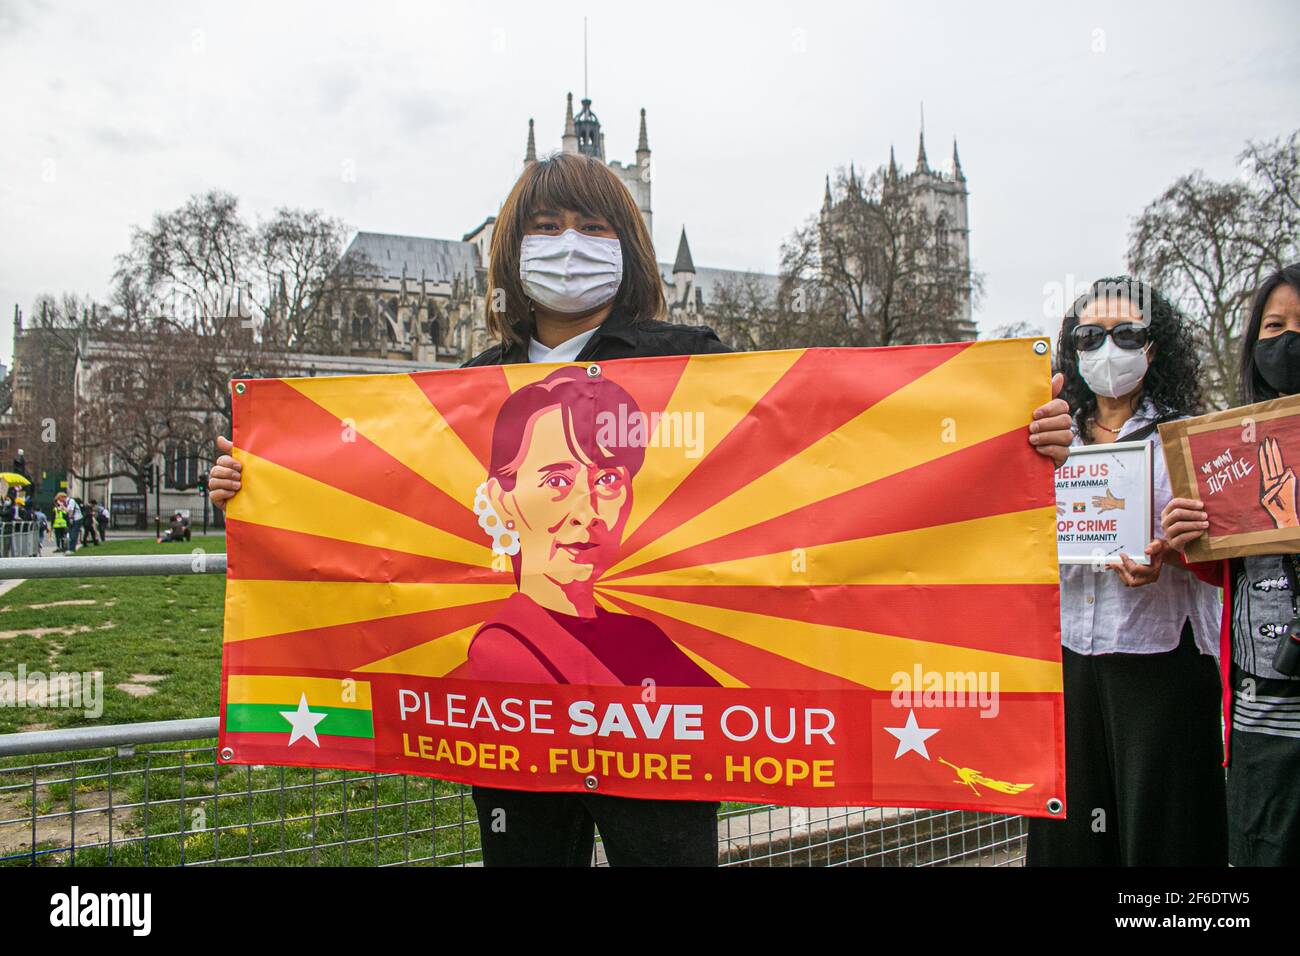 WESTMINSTER LONDON, REINO UNIDO 31 DE MARZO DE 2021. Miembros de la comunidad birmana se manifiestan con pancartas y señales en la Plaza del Parlamento contra la dictadura militar impuesta en Myanmar y piden la restauración de la democracia y la liberación de Aung San Suu Kyi, que ha sido detenida desde febrero de 2021. Muchas personas han sido asesinadas por las fuerzas de seguridad en Myanmar desde la toma militar del país el mes pasado.Credit amer ghazzal/Alamy Live News Foto de stock